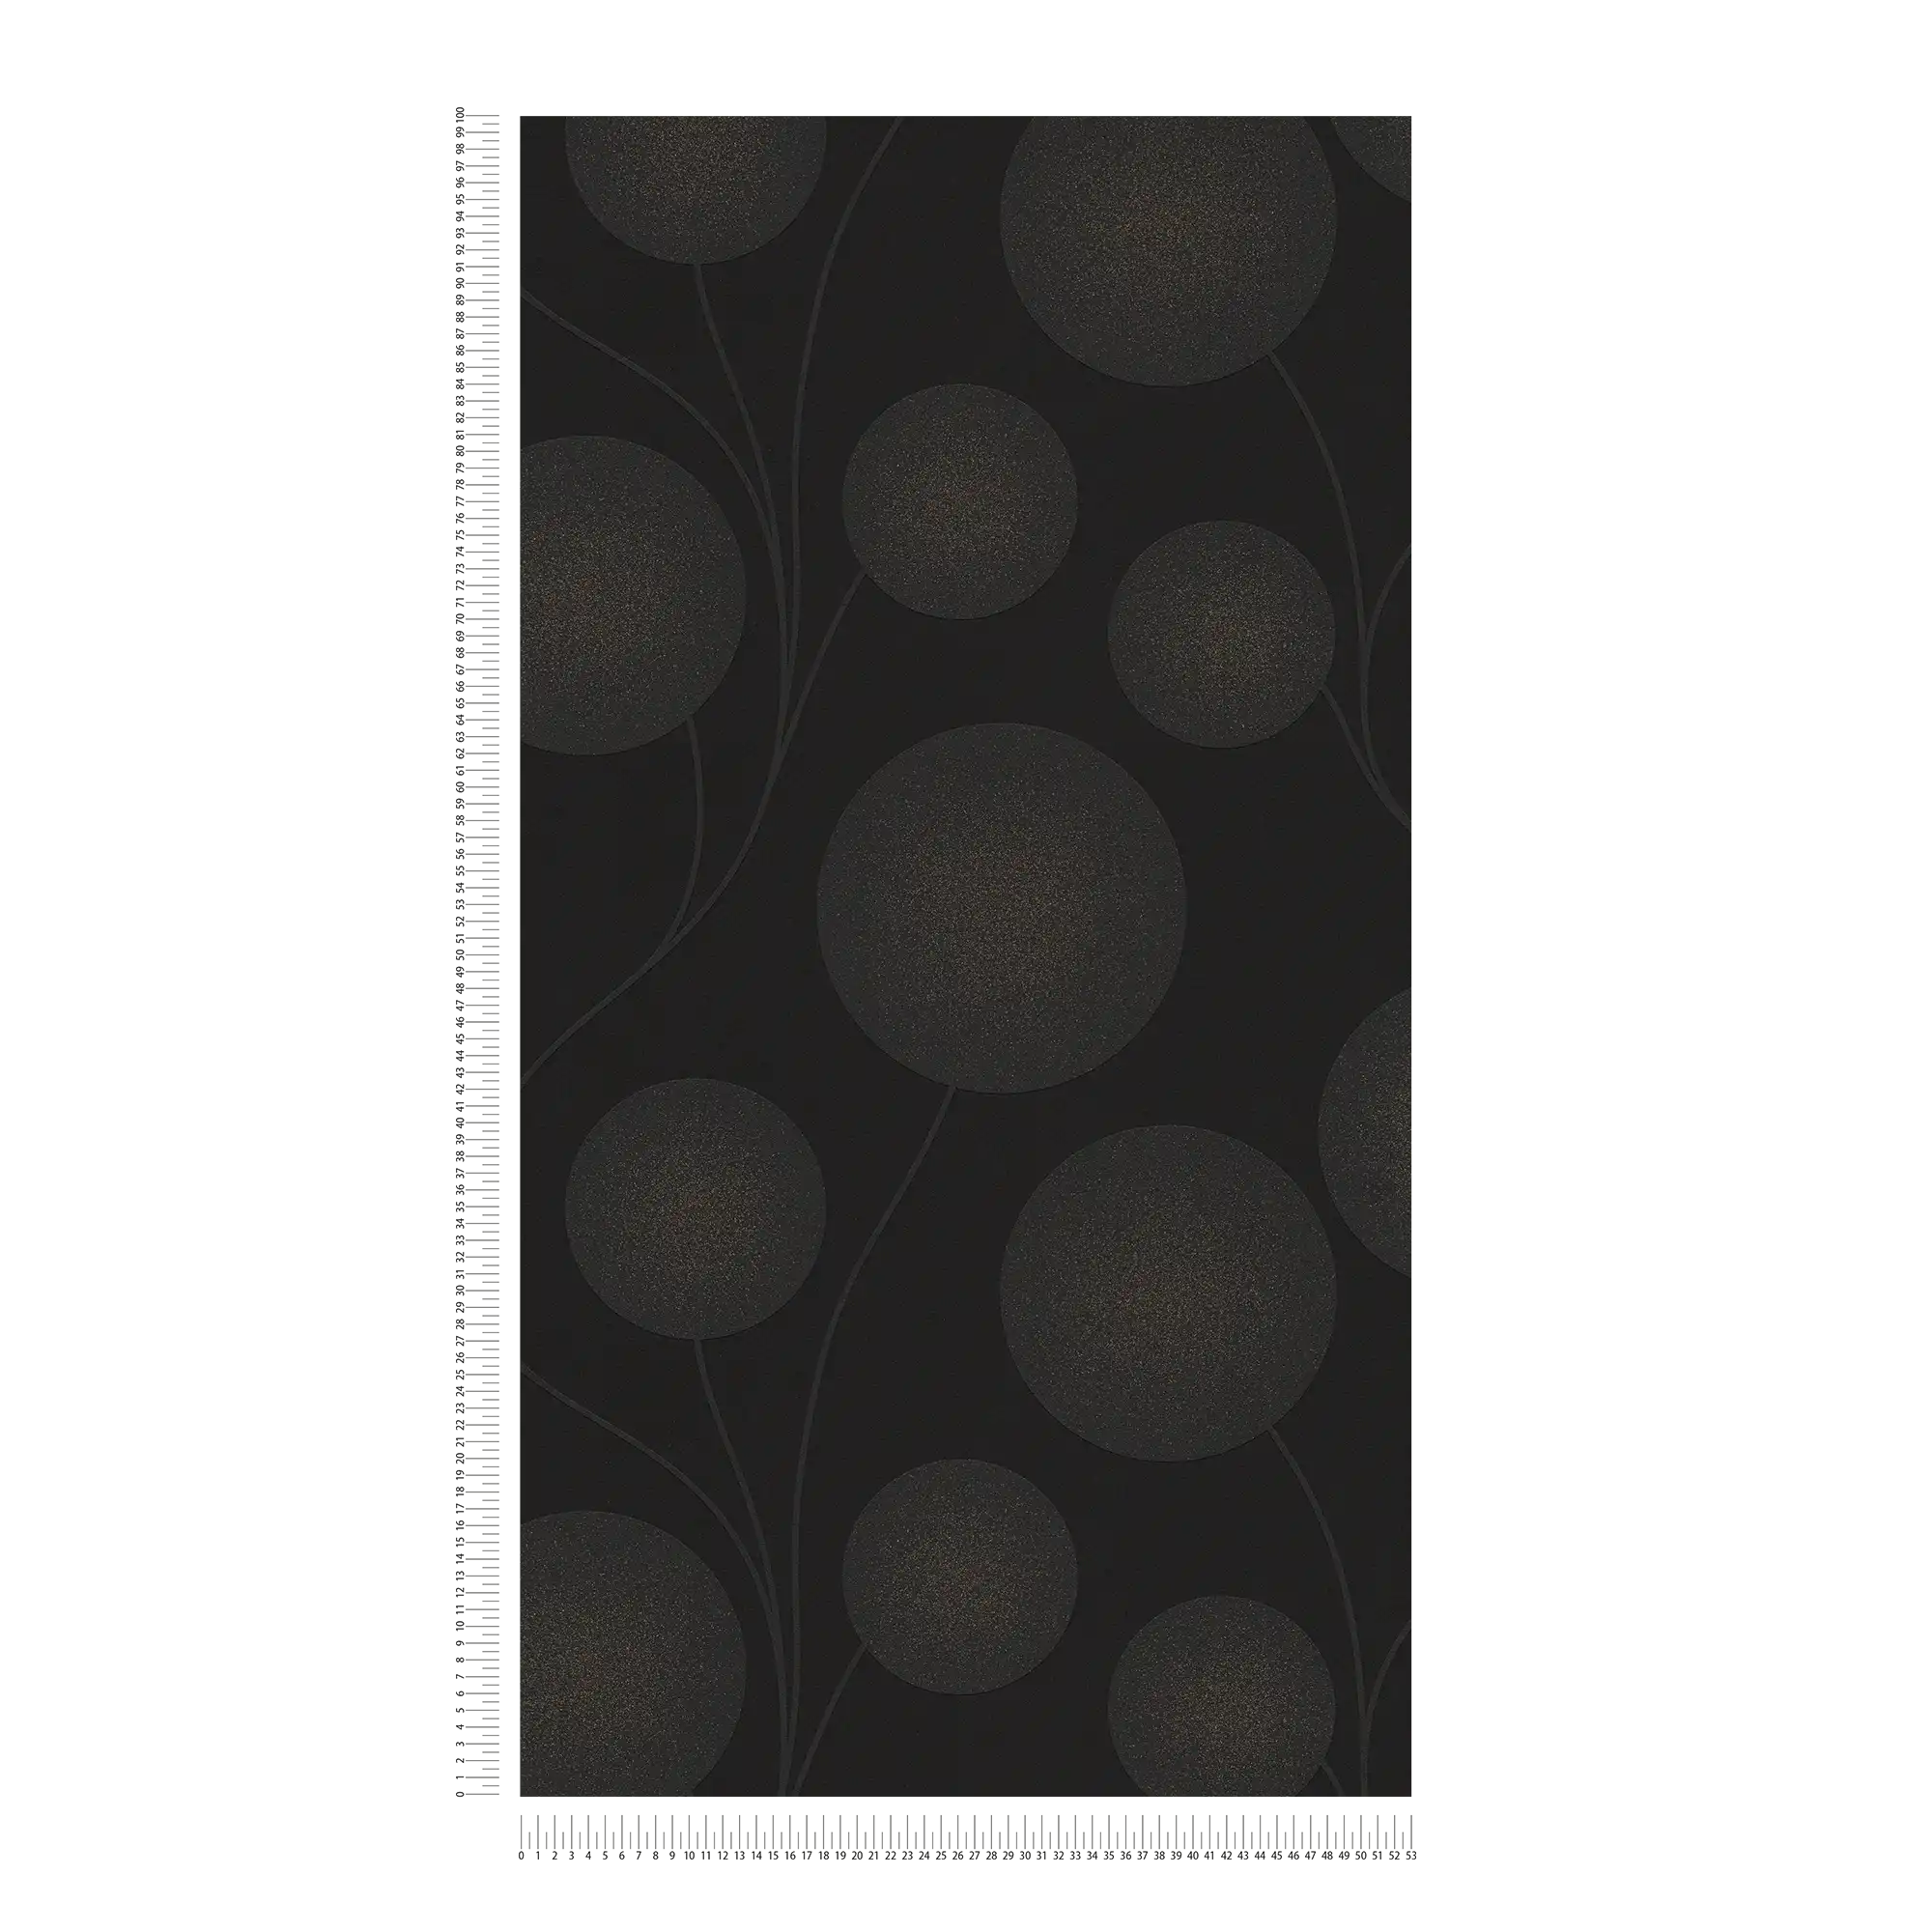             Behang met stippen design en structuur patroon - zwart, goud
        